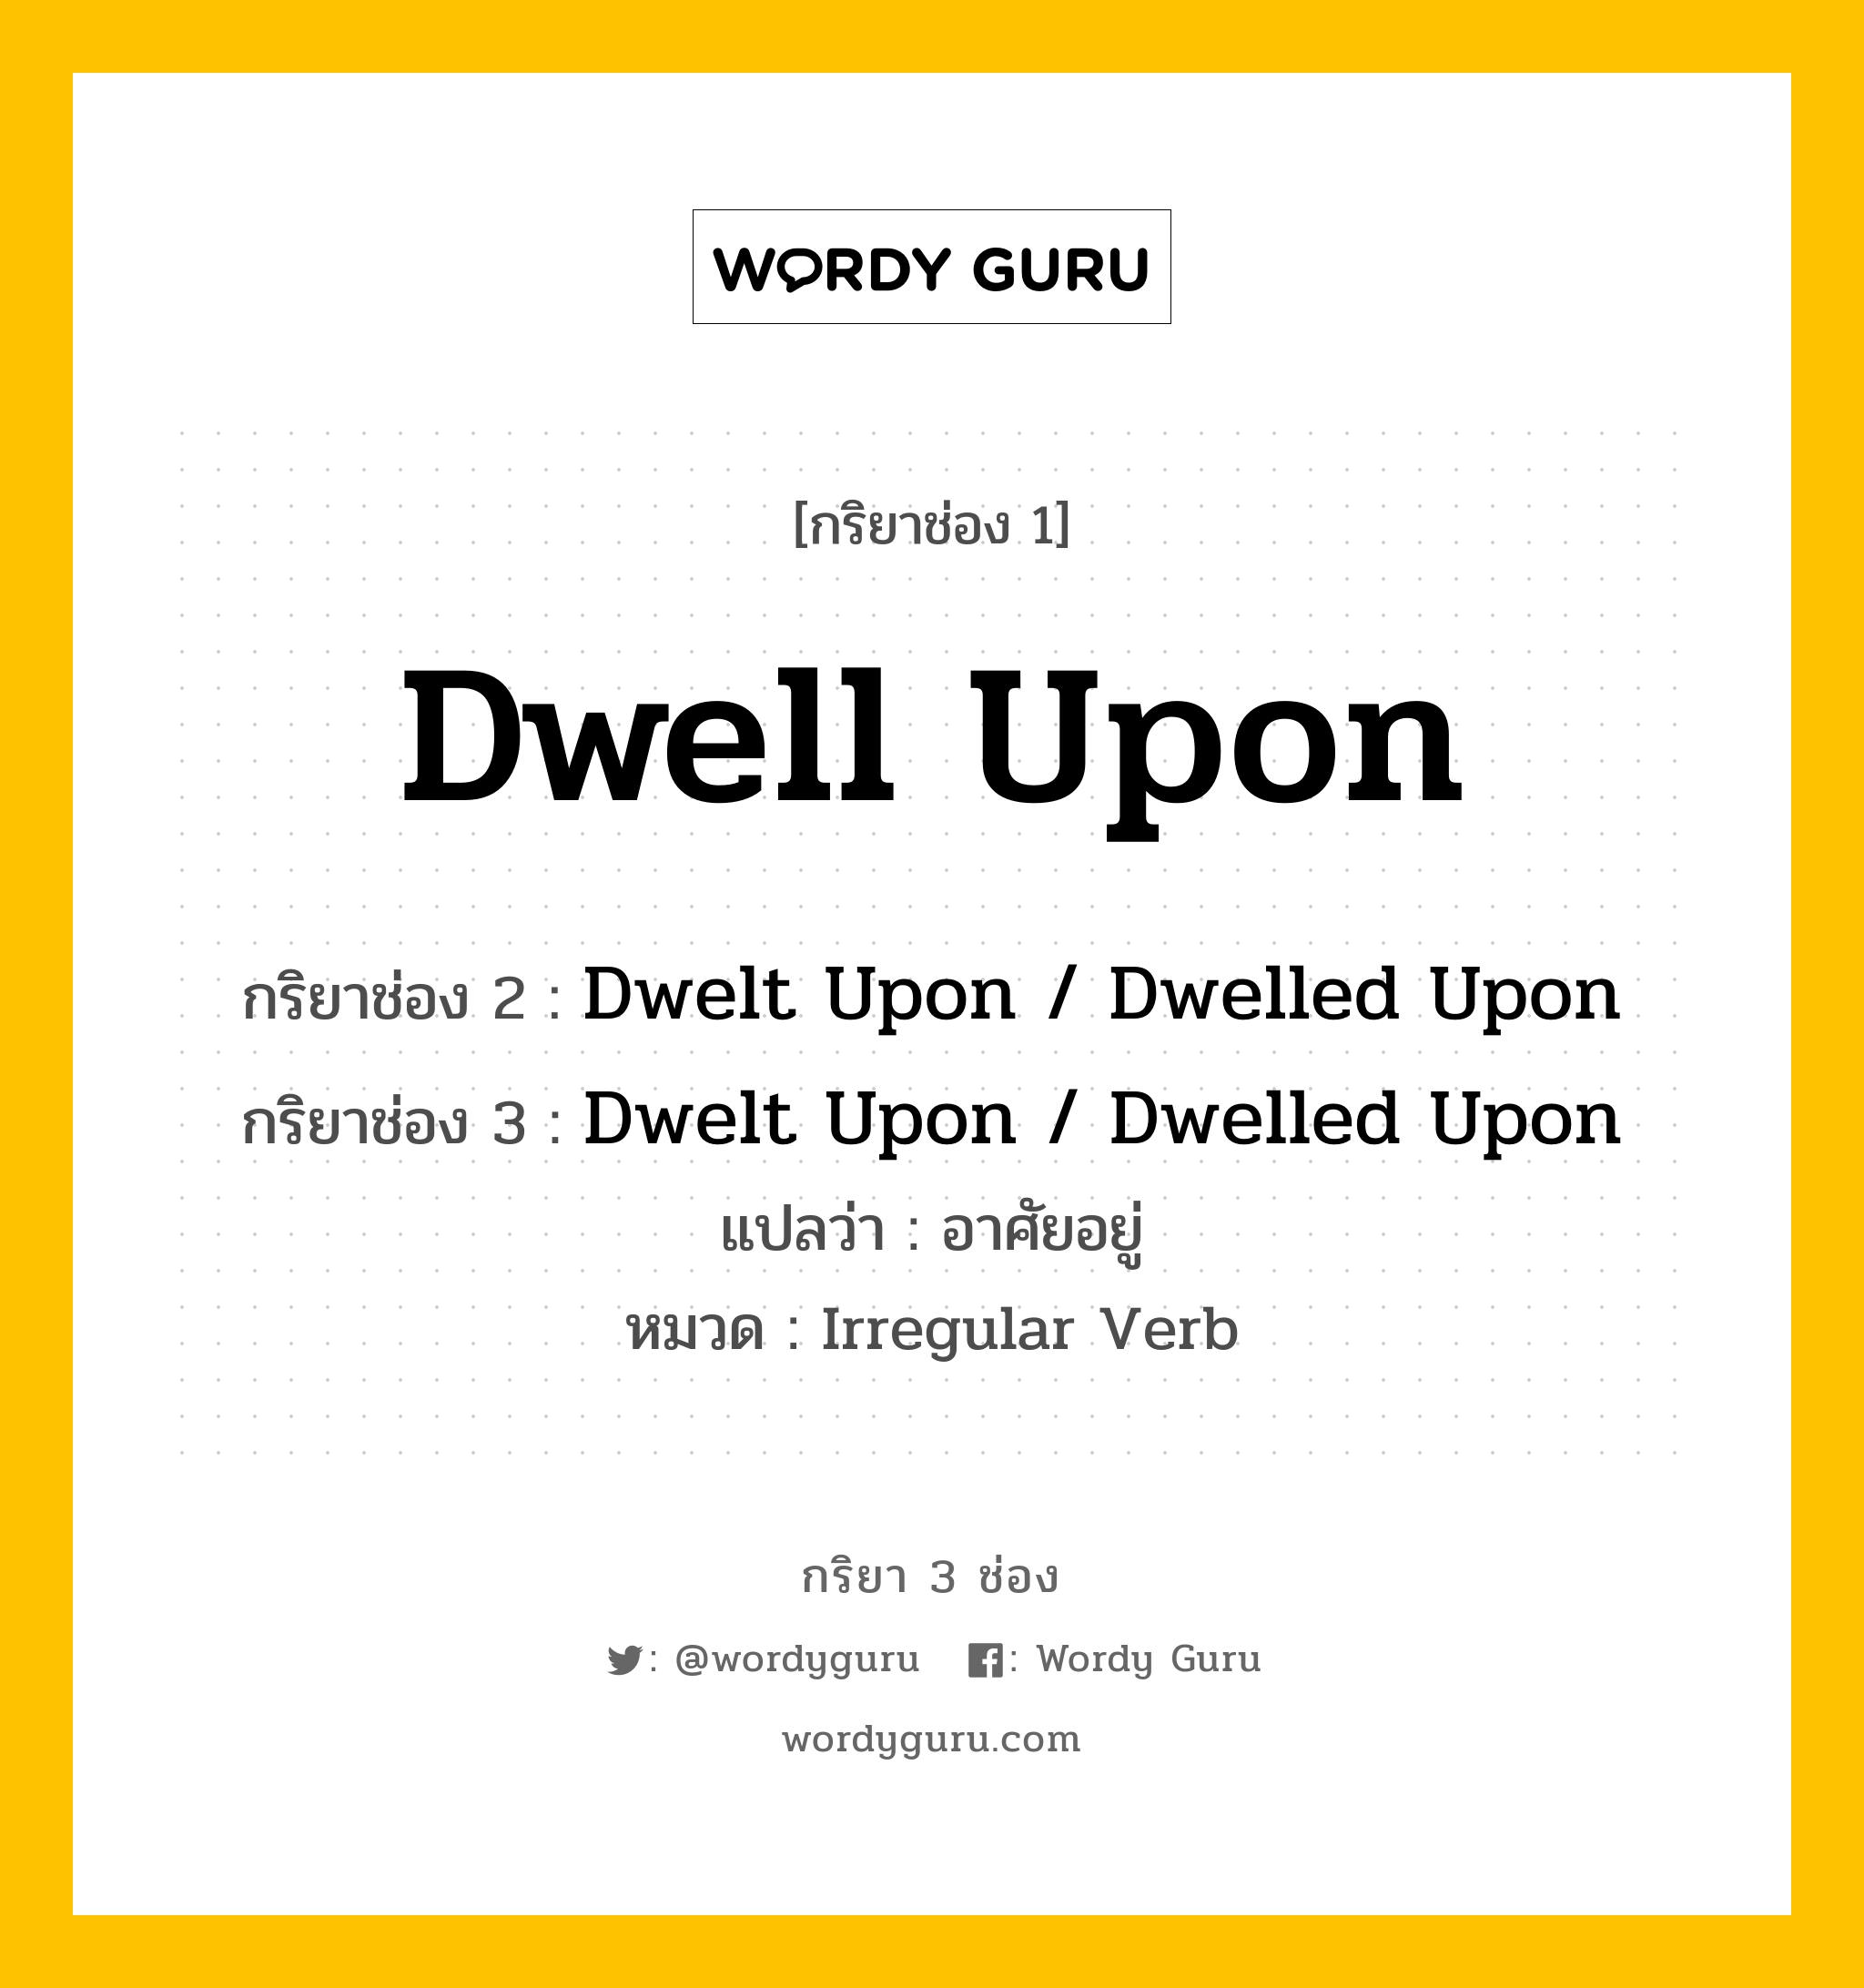 Dwell Upon มีกริยา 3 ช่องอะไรบ้าง? คำศัพท์ในกลุ่มประเภท Irregular Verb, กริยาช่อง 1 Dwell Upon กริยาช่อง 2 Dwelt Upon / Dwelled Upon กริยาช่อง 3 Dwelt Upon / Dwelled Upon แปลว่า อาศัยอยู่ หมวด Irregular Verb หมวด Irregular Verb